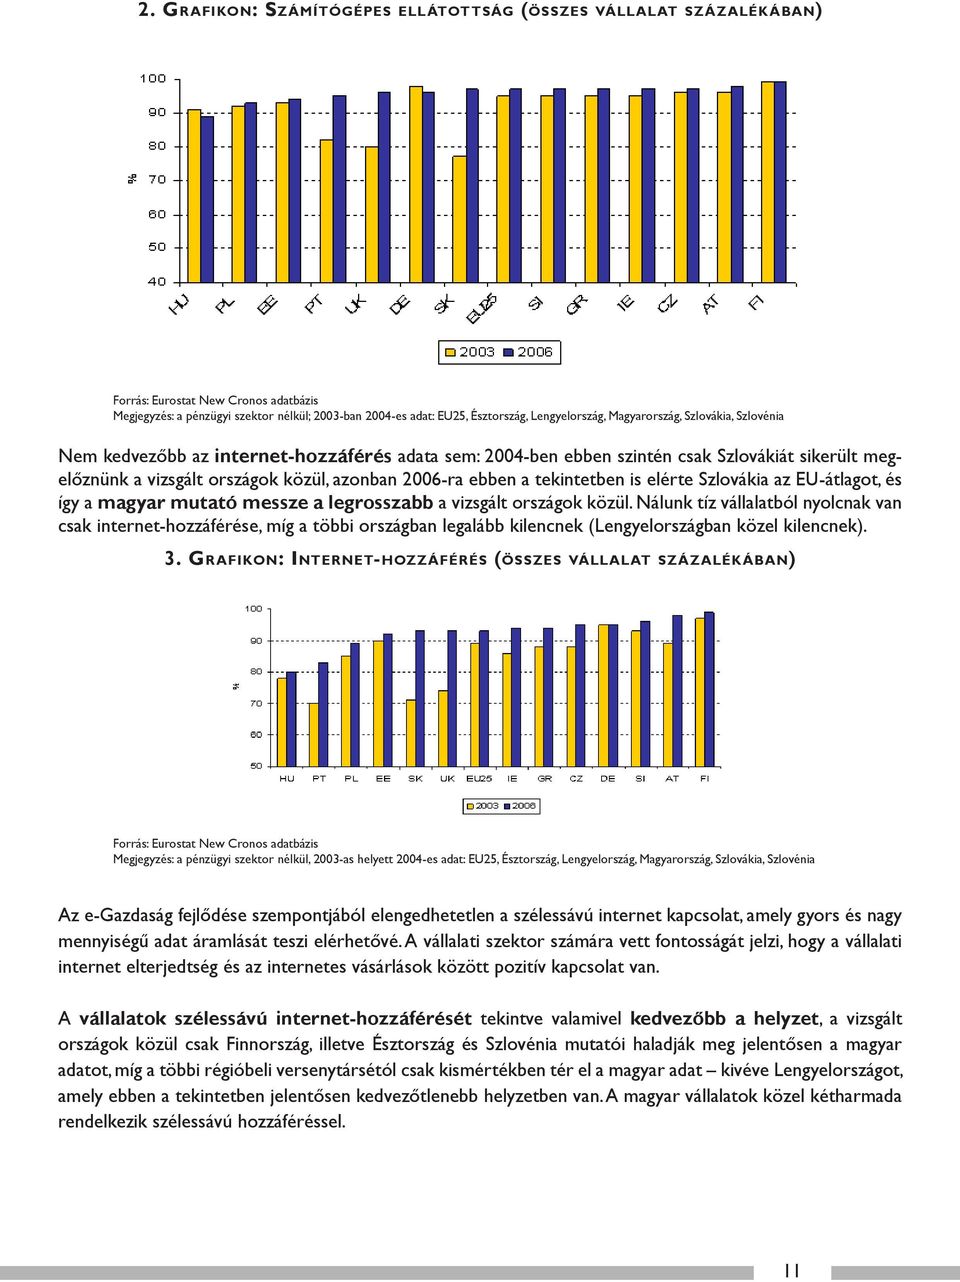 a vizsgált országok közül, azonban 2006-ra ebben a tekintetben is elérte Szlovákia az EU-átlagot, és így a magyar mutató messze a legrosszabb a vizsgált országok közül.